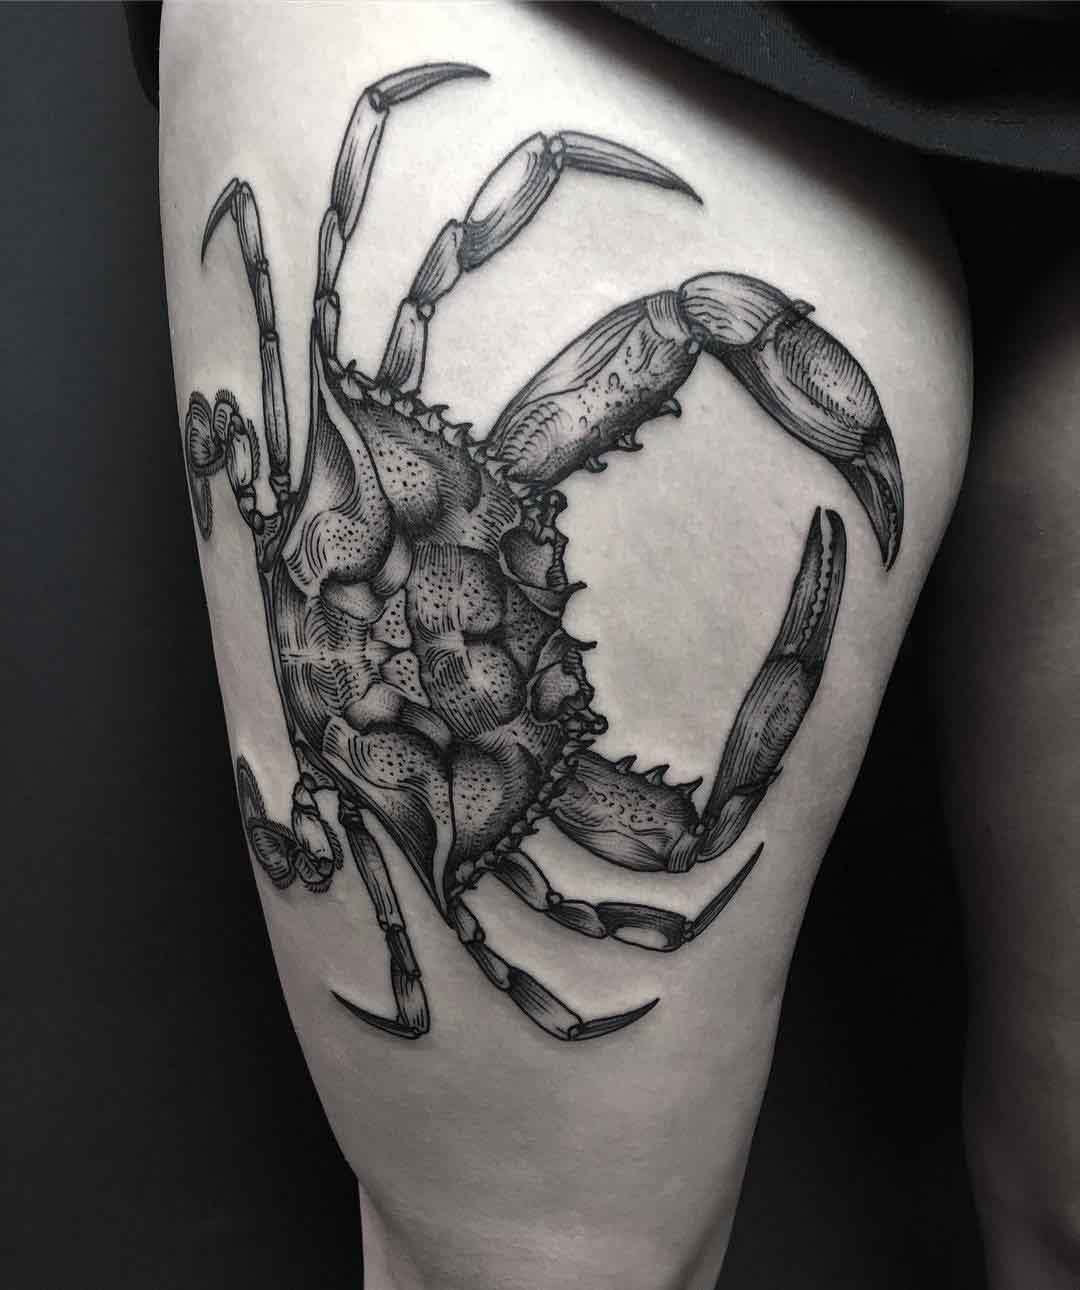 Blue Crab Tattoo - Best Tattoo Ideas Gallery